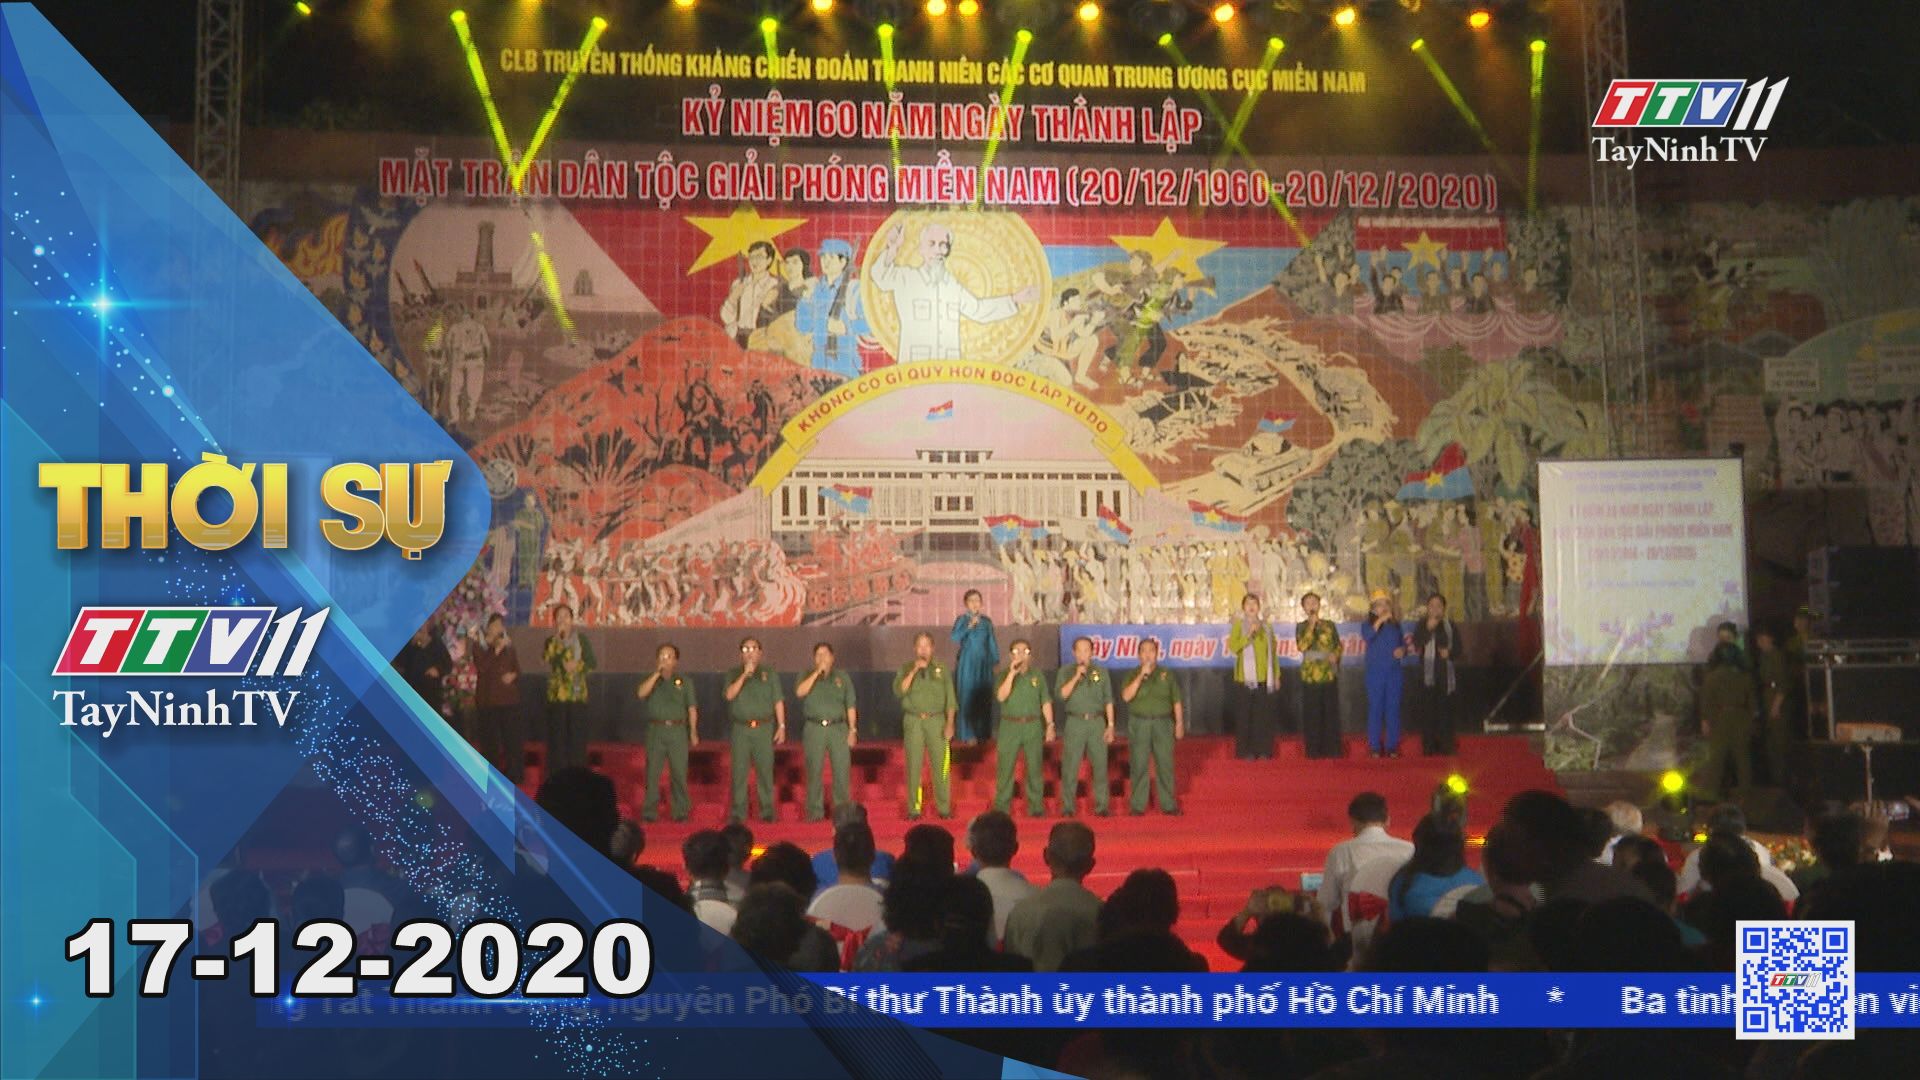 Thời sự Tây Ninh 17-12-2020 | Tin tức hôm nay | TayNinhTV